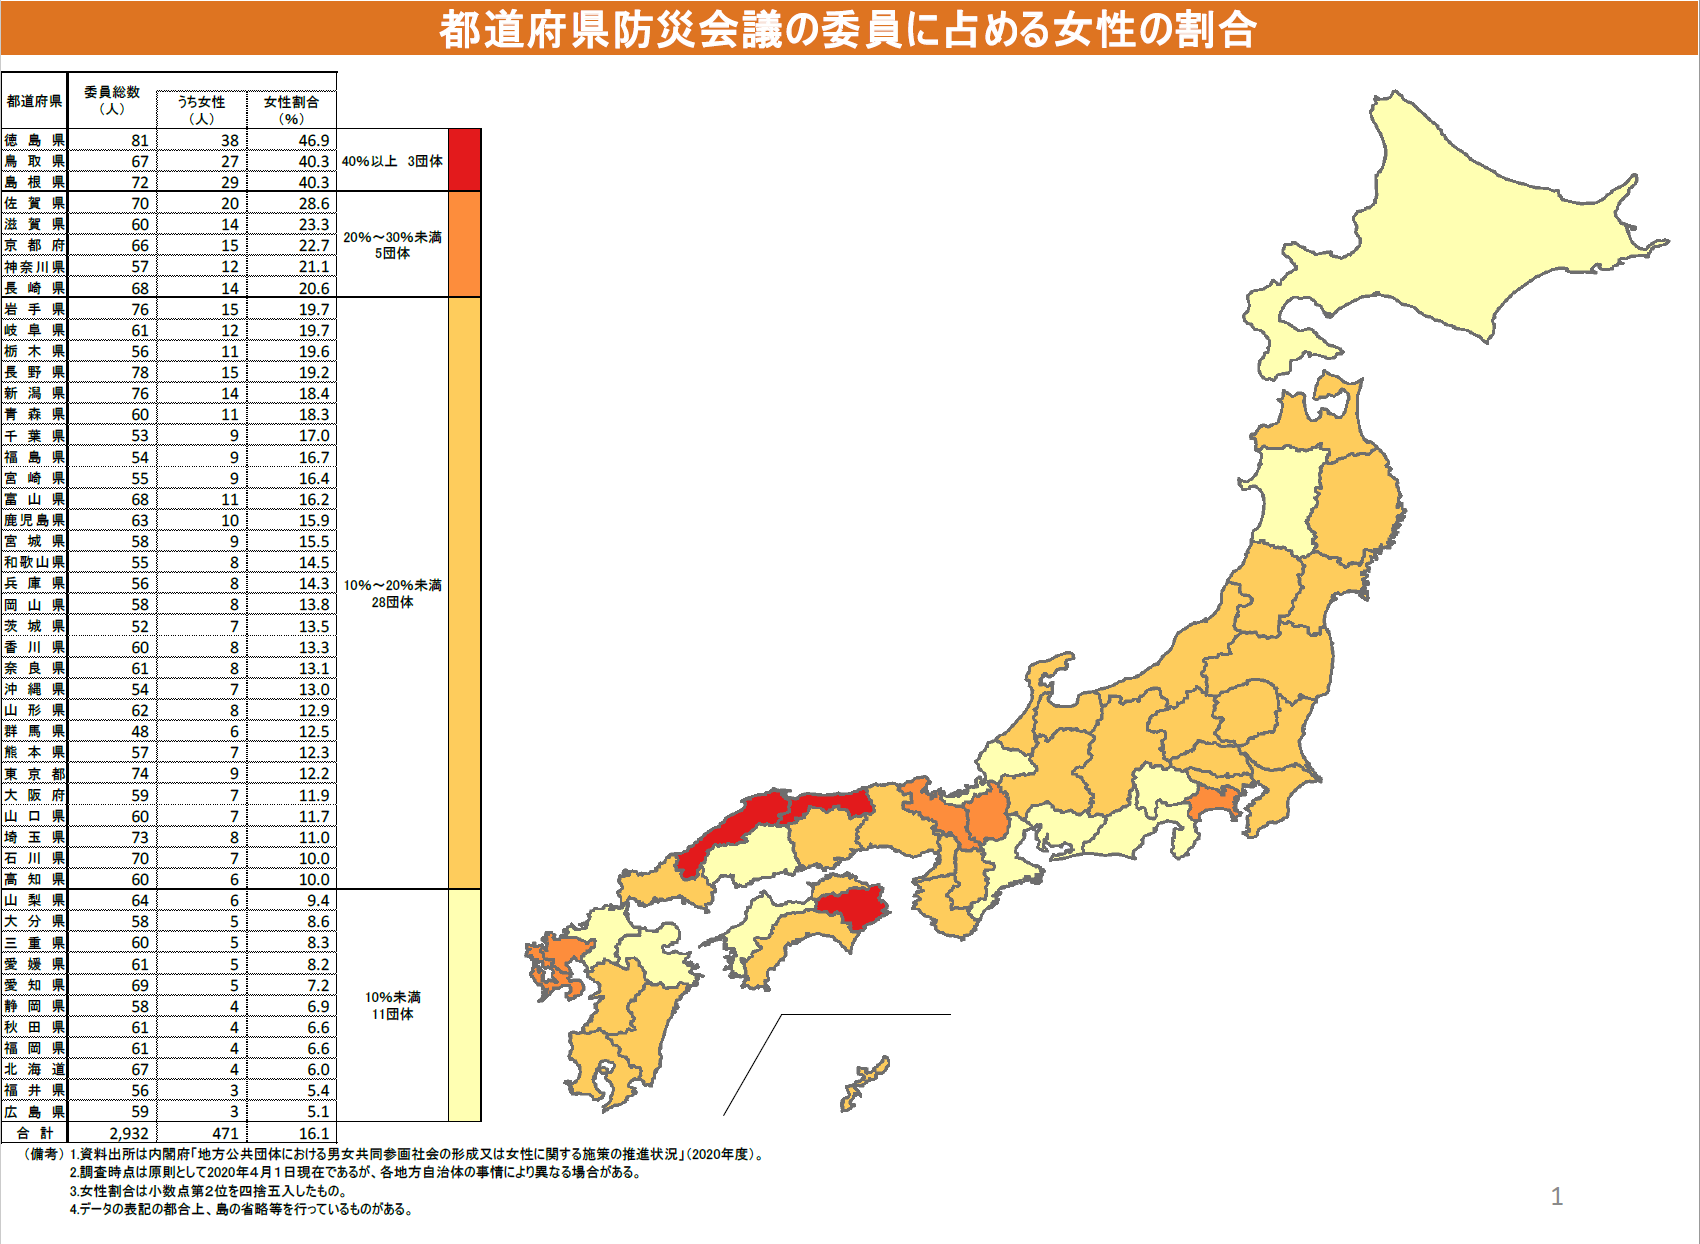 都道府県防災会議の委員に占める女性の割合の図